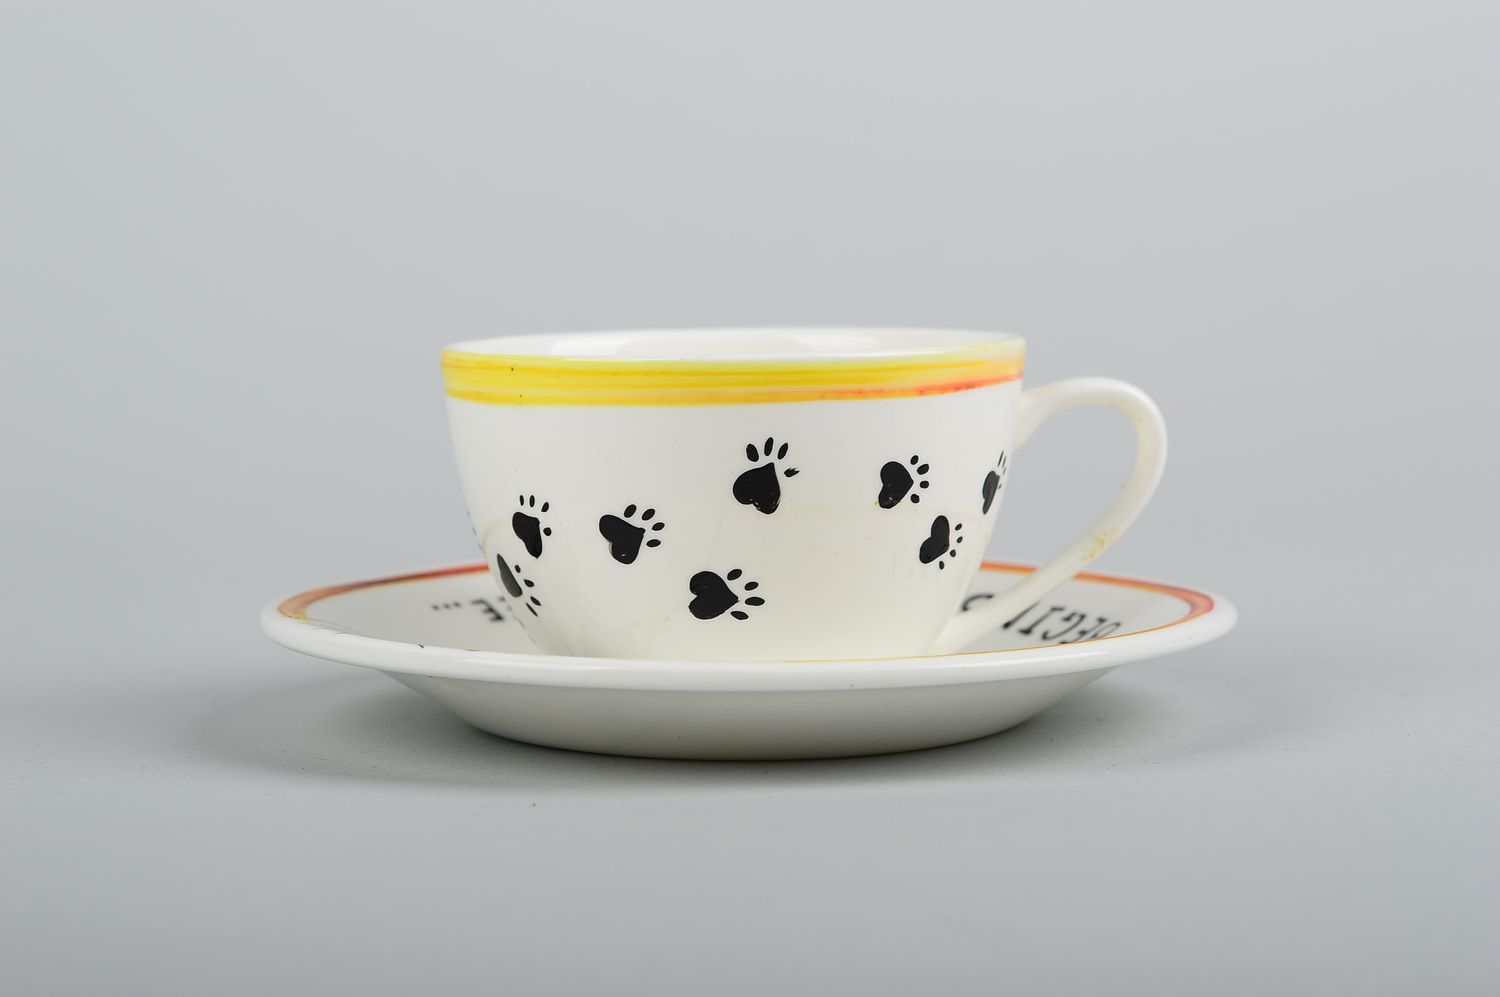 Tasse mit Untertasse Keramik Tasse handmade Tee Tasse bemalt Tee Geschirr schön foto 3